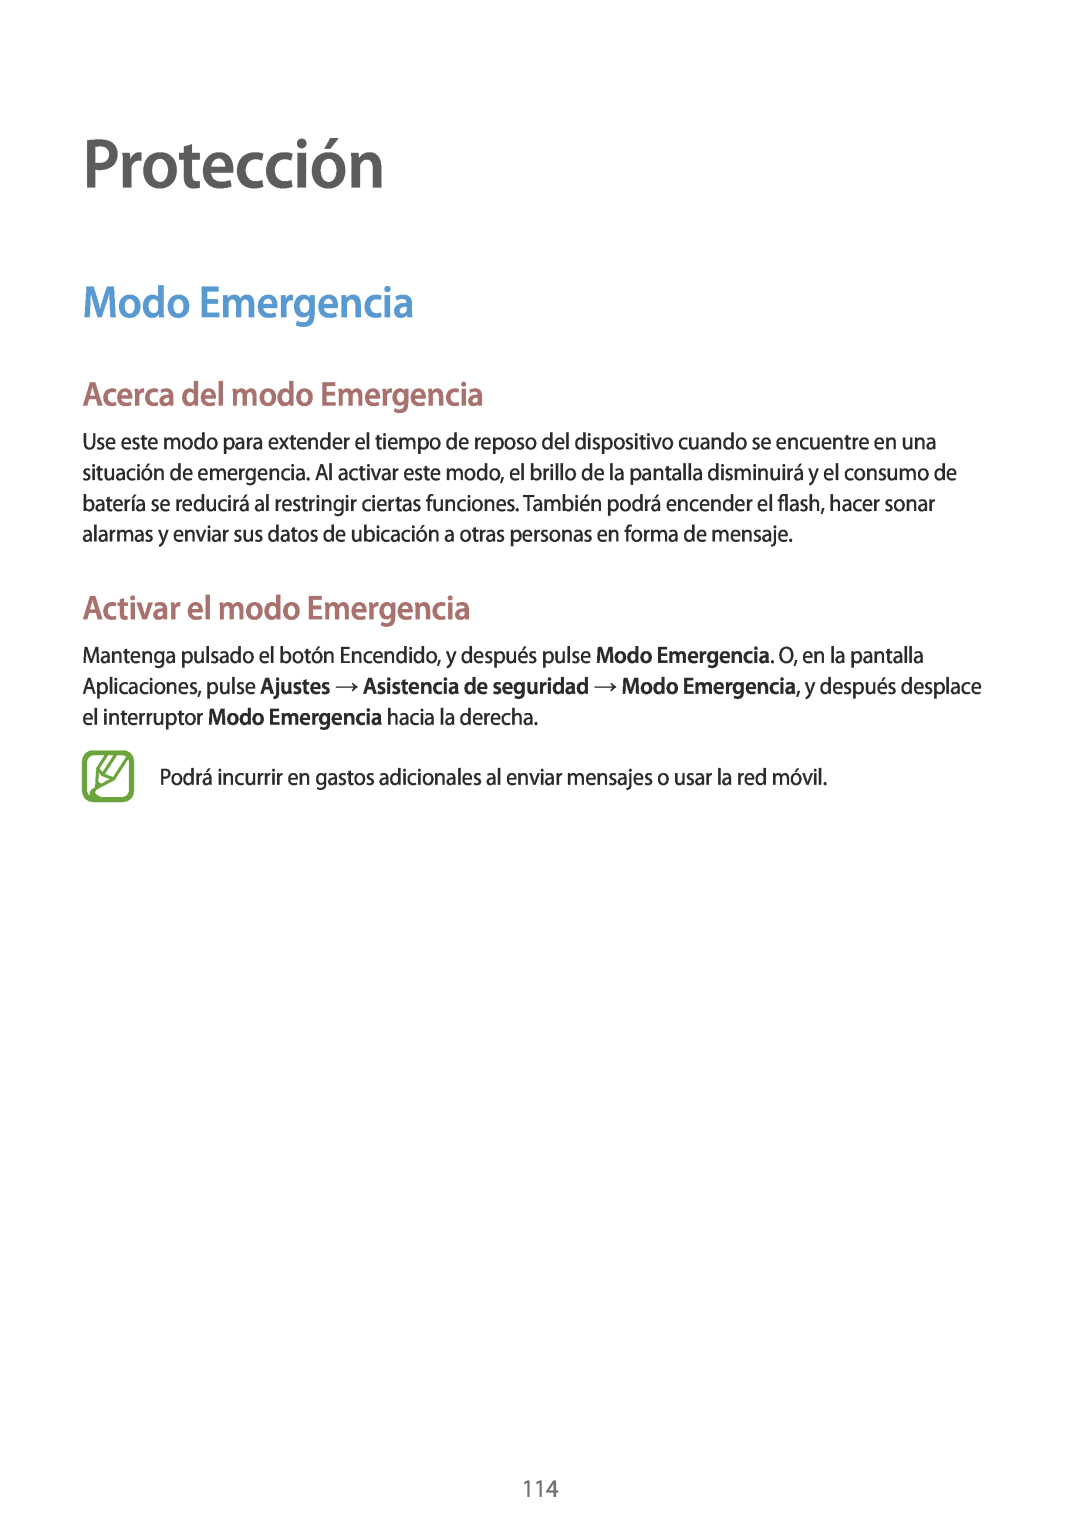 Samsung SM-G900FZDAROM, SM-G900FZKADBT Protección, Modo Emergencia, Acerca del modo Emergencia, Activar el modo Emergencia 